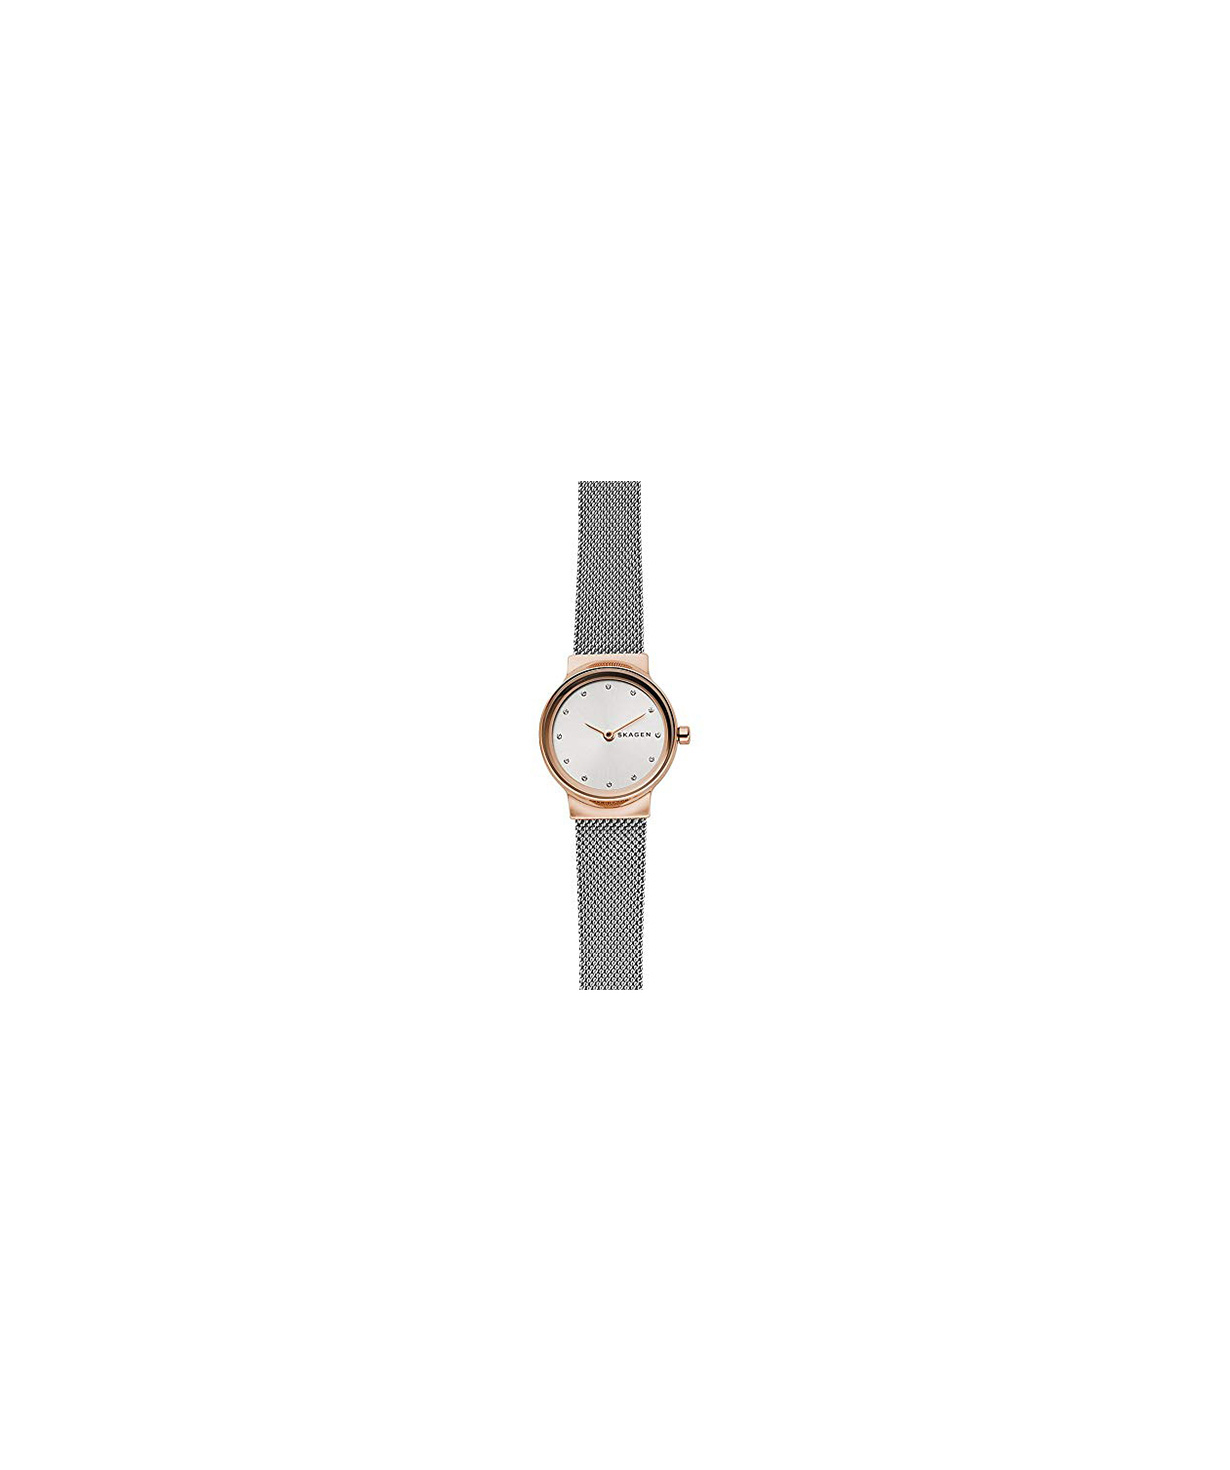 Ժամացույց  «Skagen» ձեռքի SKW2716